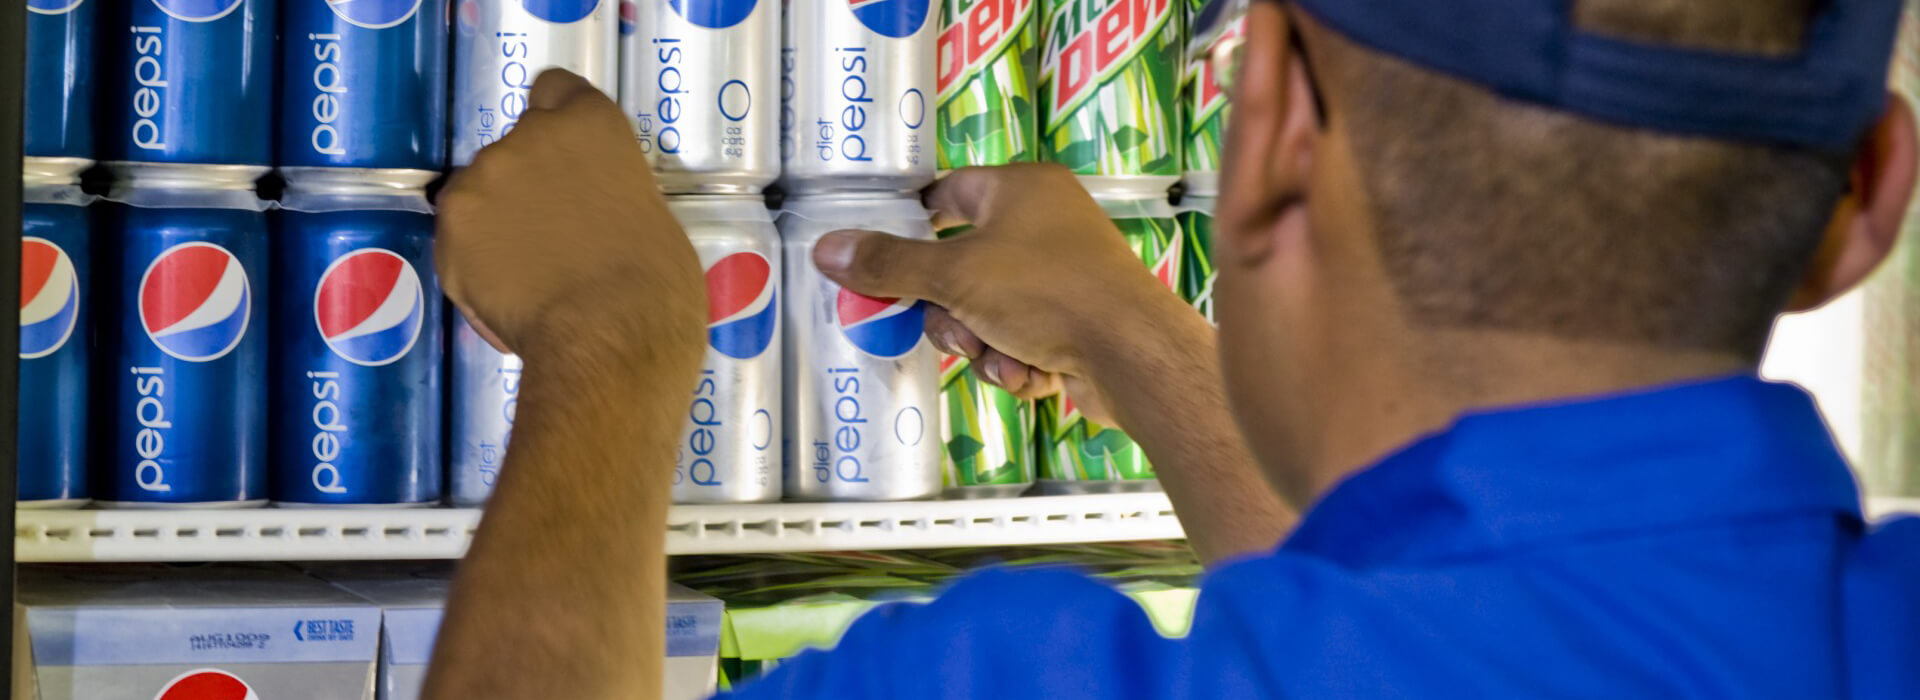 Un trabajador carga latas de Pepsi en un frigorífico.